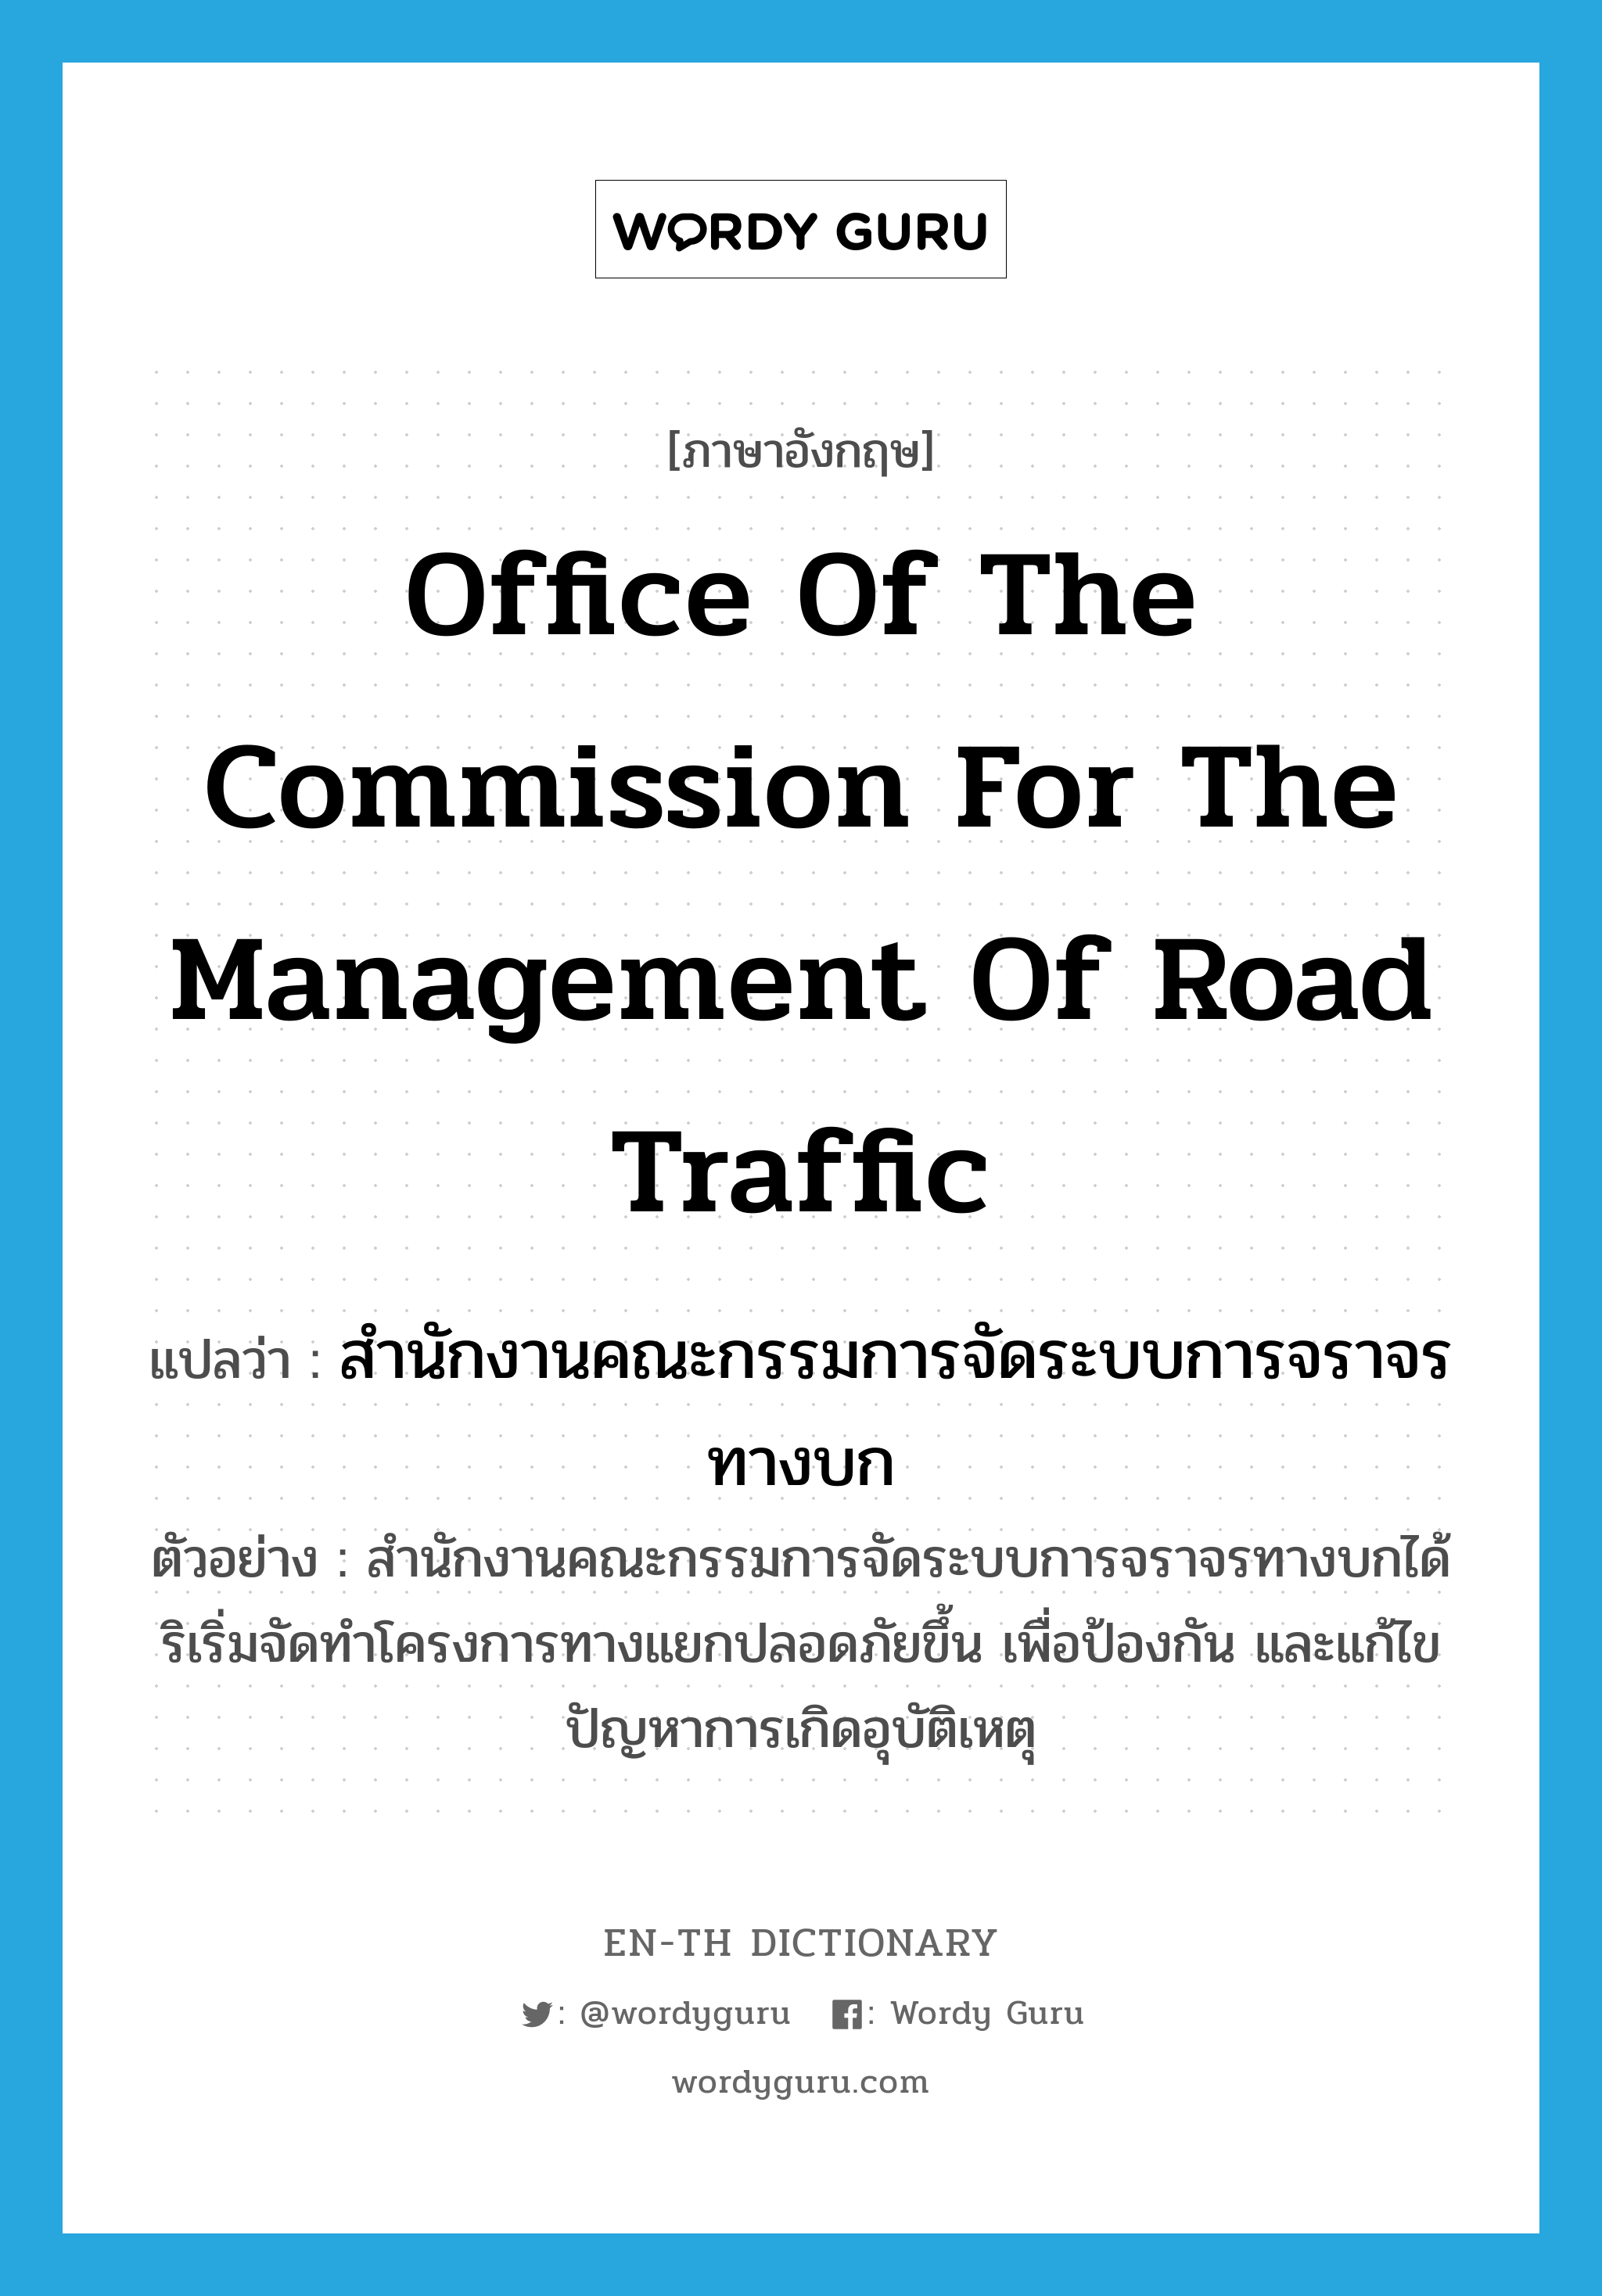 สำนักงานคณะกรรมการจัดระบบการจราจรทางบก ภาษาอังกฤษ?, คำศัพท์ภาษาอังกฤษ สำนักงานคณะกรรมการจัดระบบการจราจรทางบก แปลว่า Office of the Commission for the Management of Road Traffic ประเภท N ตัวอย่าง สำนักงานคณะกรรมการจัดระบบการจราจรทางบกได้ริเริ่มจัดทำโครงการทางแยกปลอดภัยขึ้น เพื่อป้องกัน และแก้ไขปัญหาการเกิดอุบัติเหตุ หมวด N